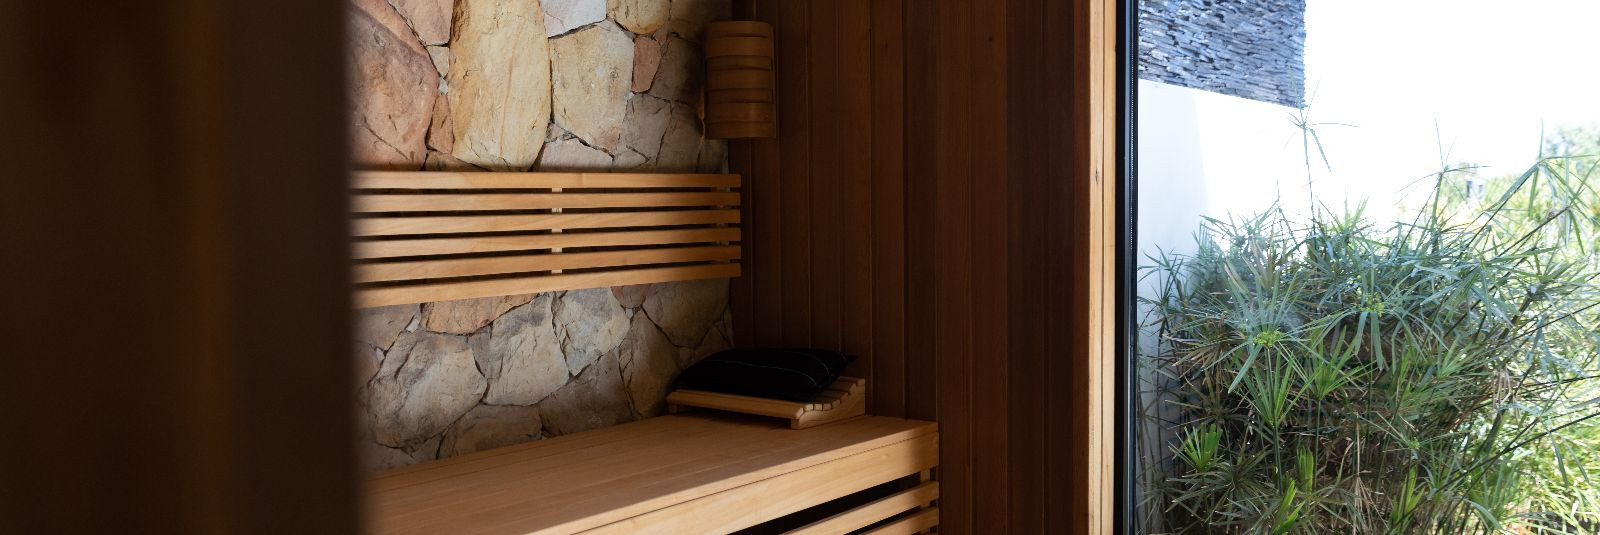 Eestis on saun traditsiooniline paik, kus inimesed käivad lõõgastumas, ...